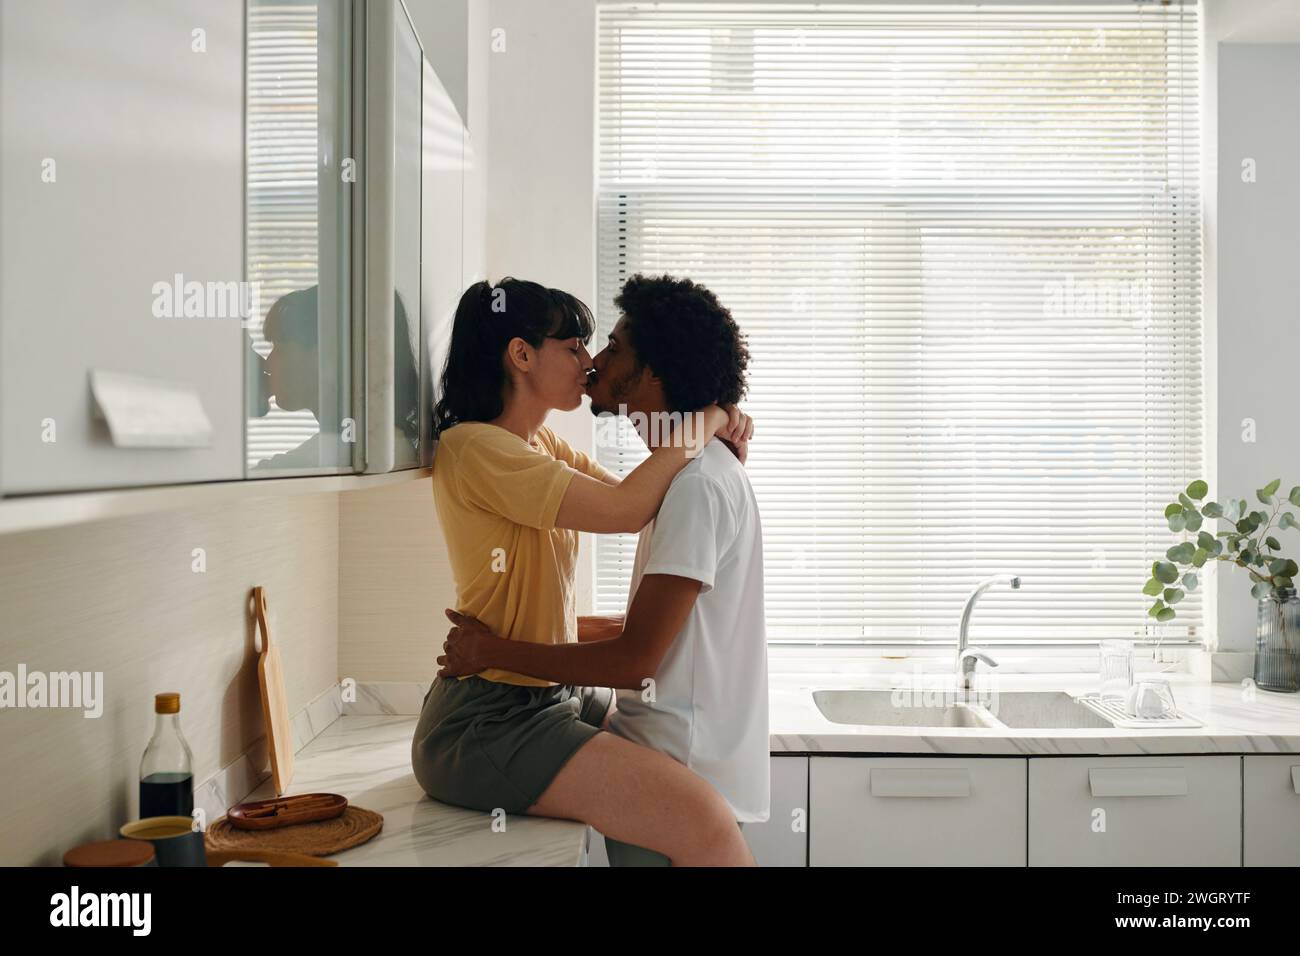 Jeune femme affectueuse en tenue décontractée assise sur le comptoir de la cuisine et embrassant son mari en gardant ses mains autour de sa taille Banque D'Images